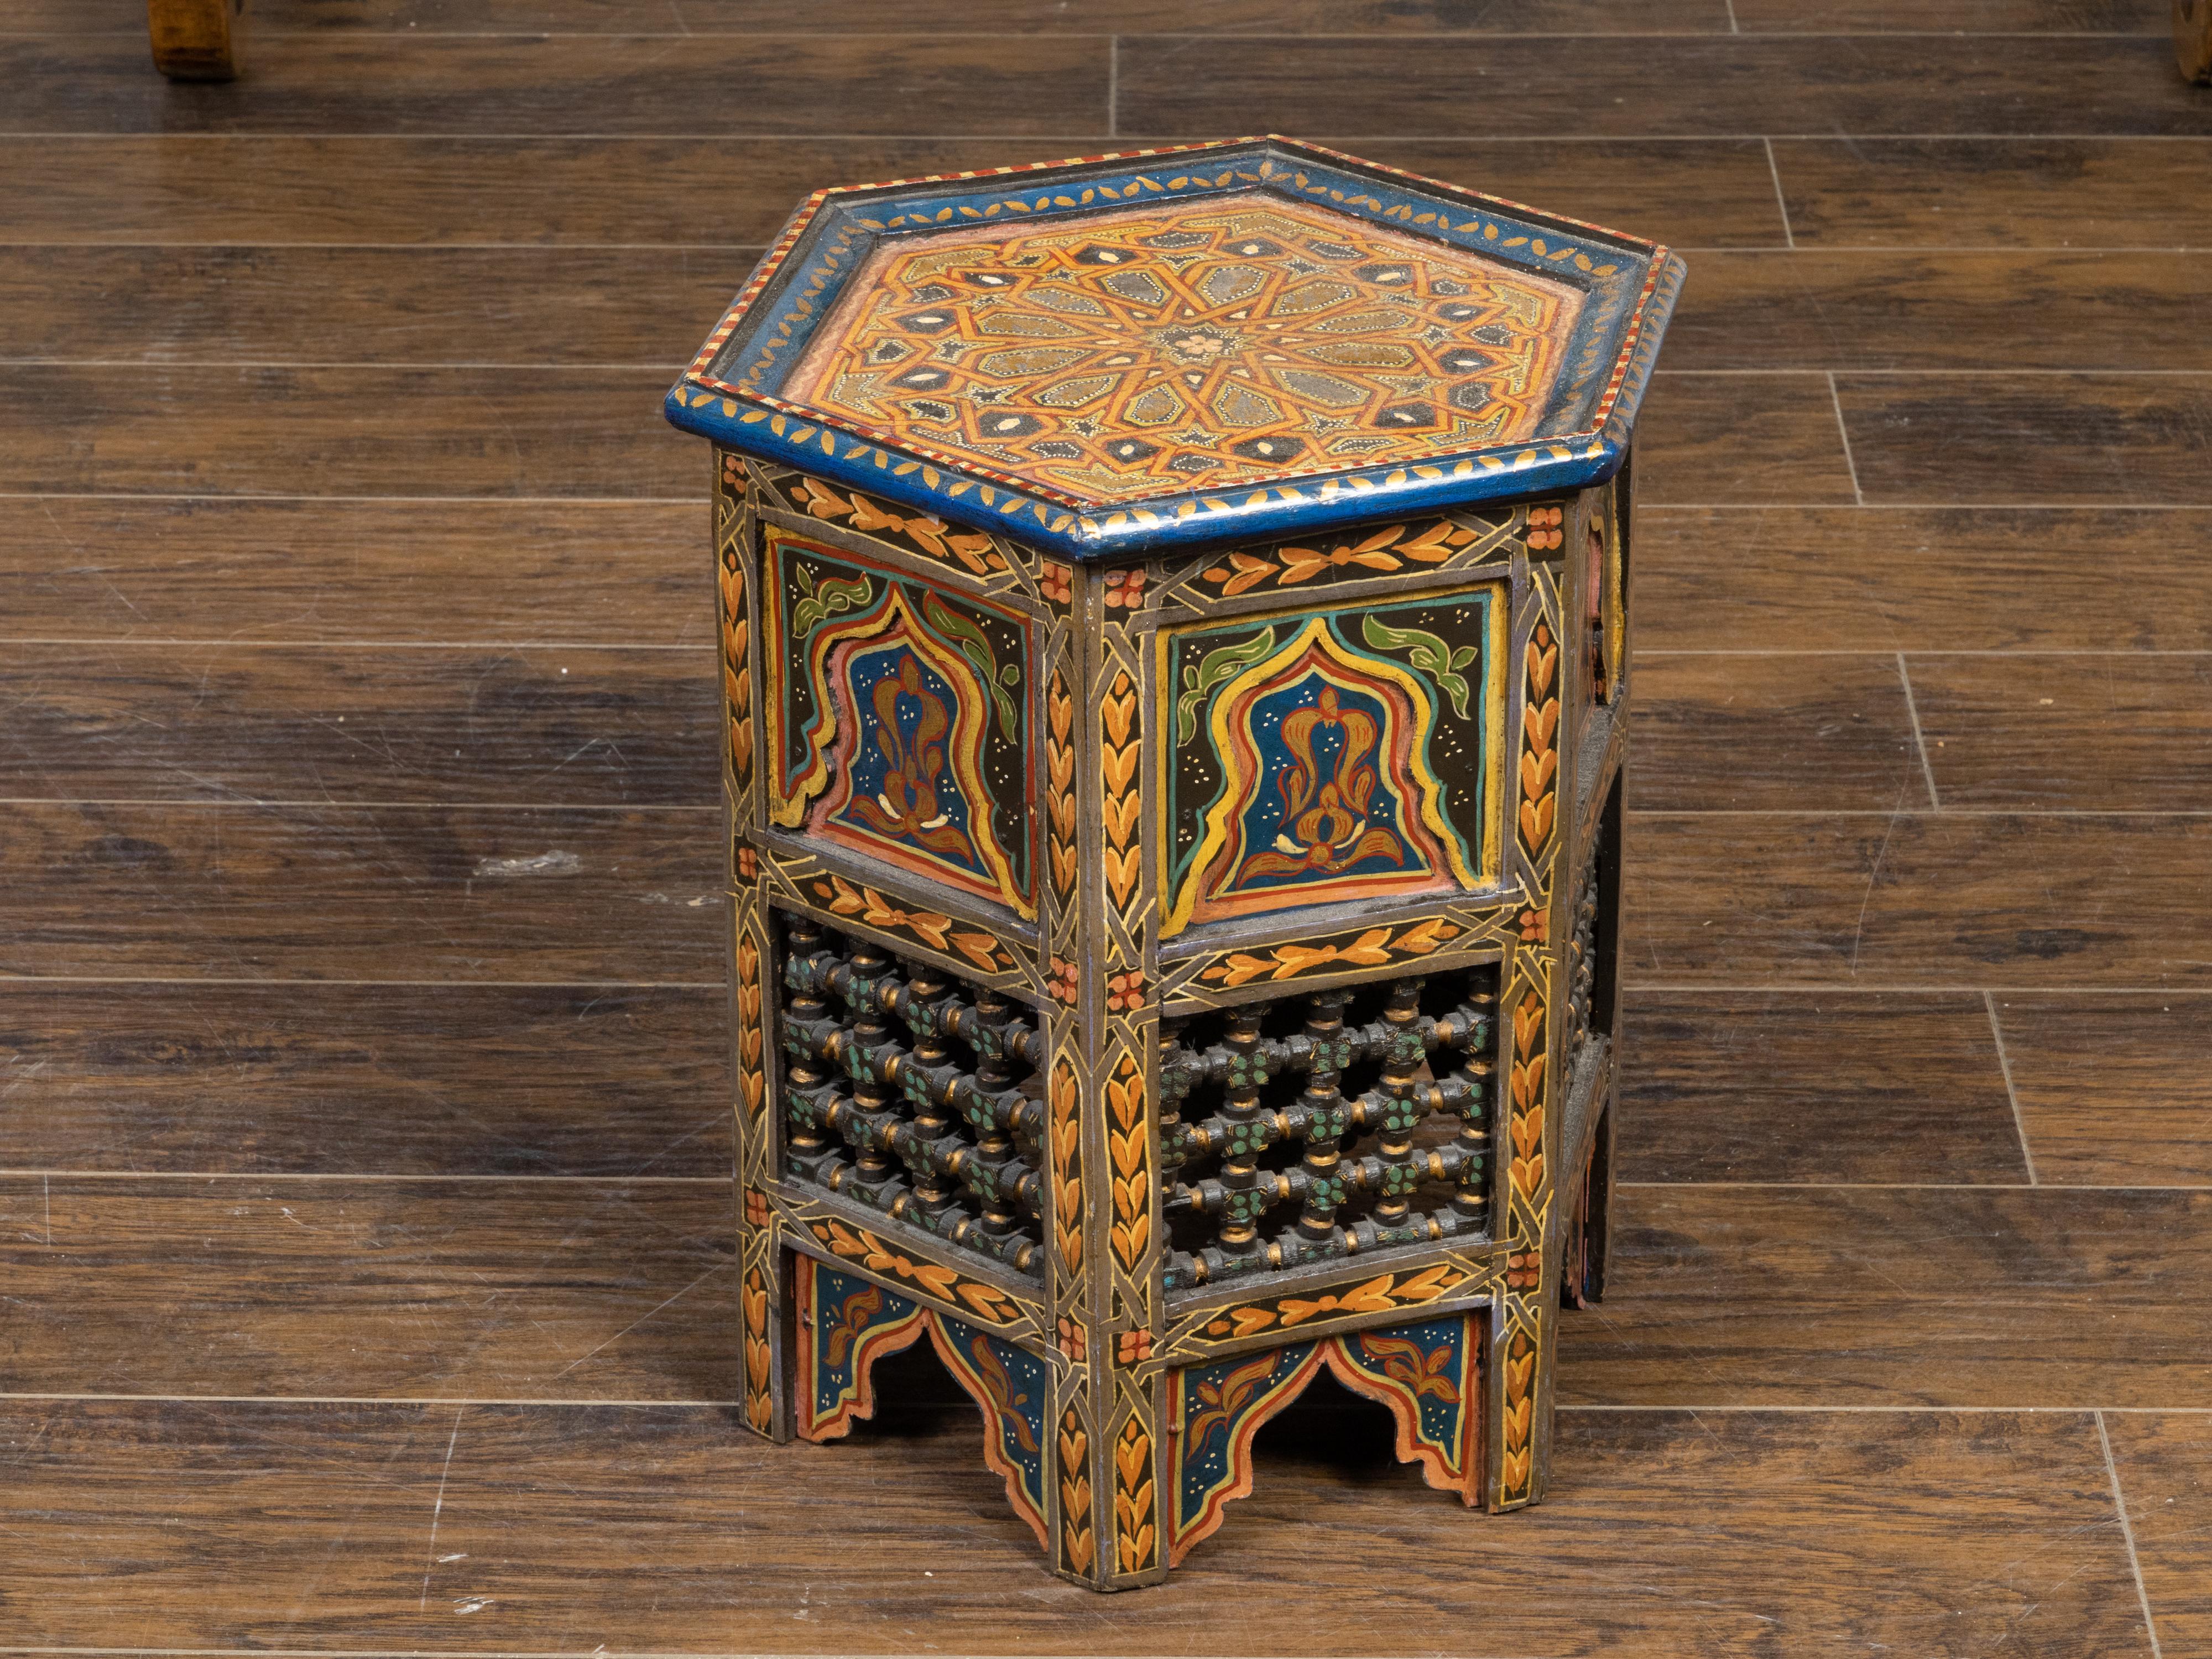 Table à boire de style marocain mauresque du début du XXe siècle, avec des motifs géométriques peints, un plateau hexagonal, un décor polychrome et des motifs sculptés percés. Créée au Maroc durant le premier quart du 20e siècle, cette petite table